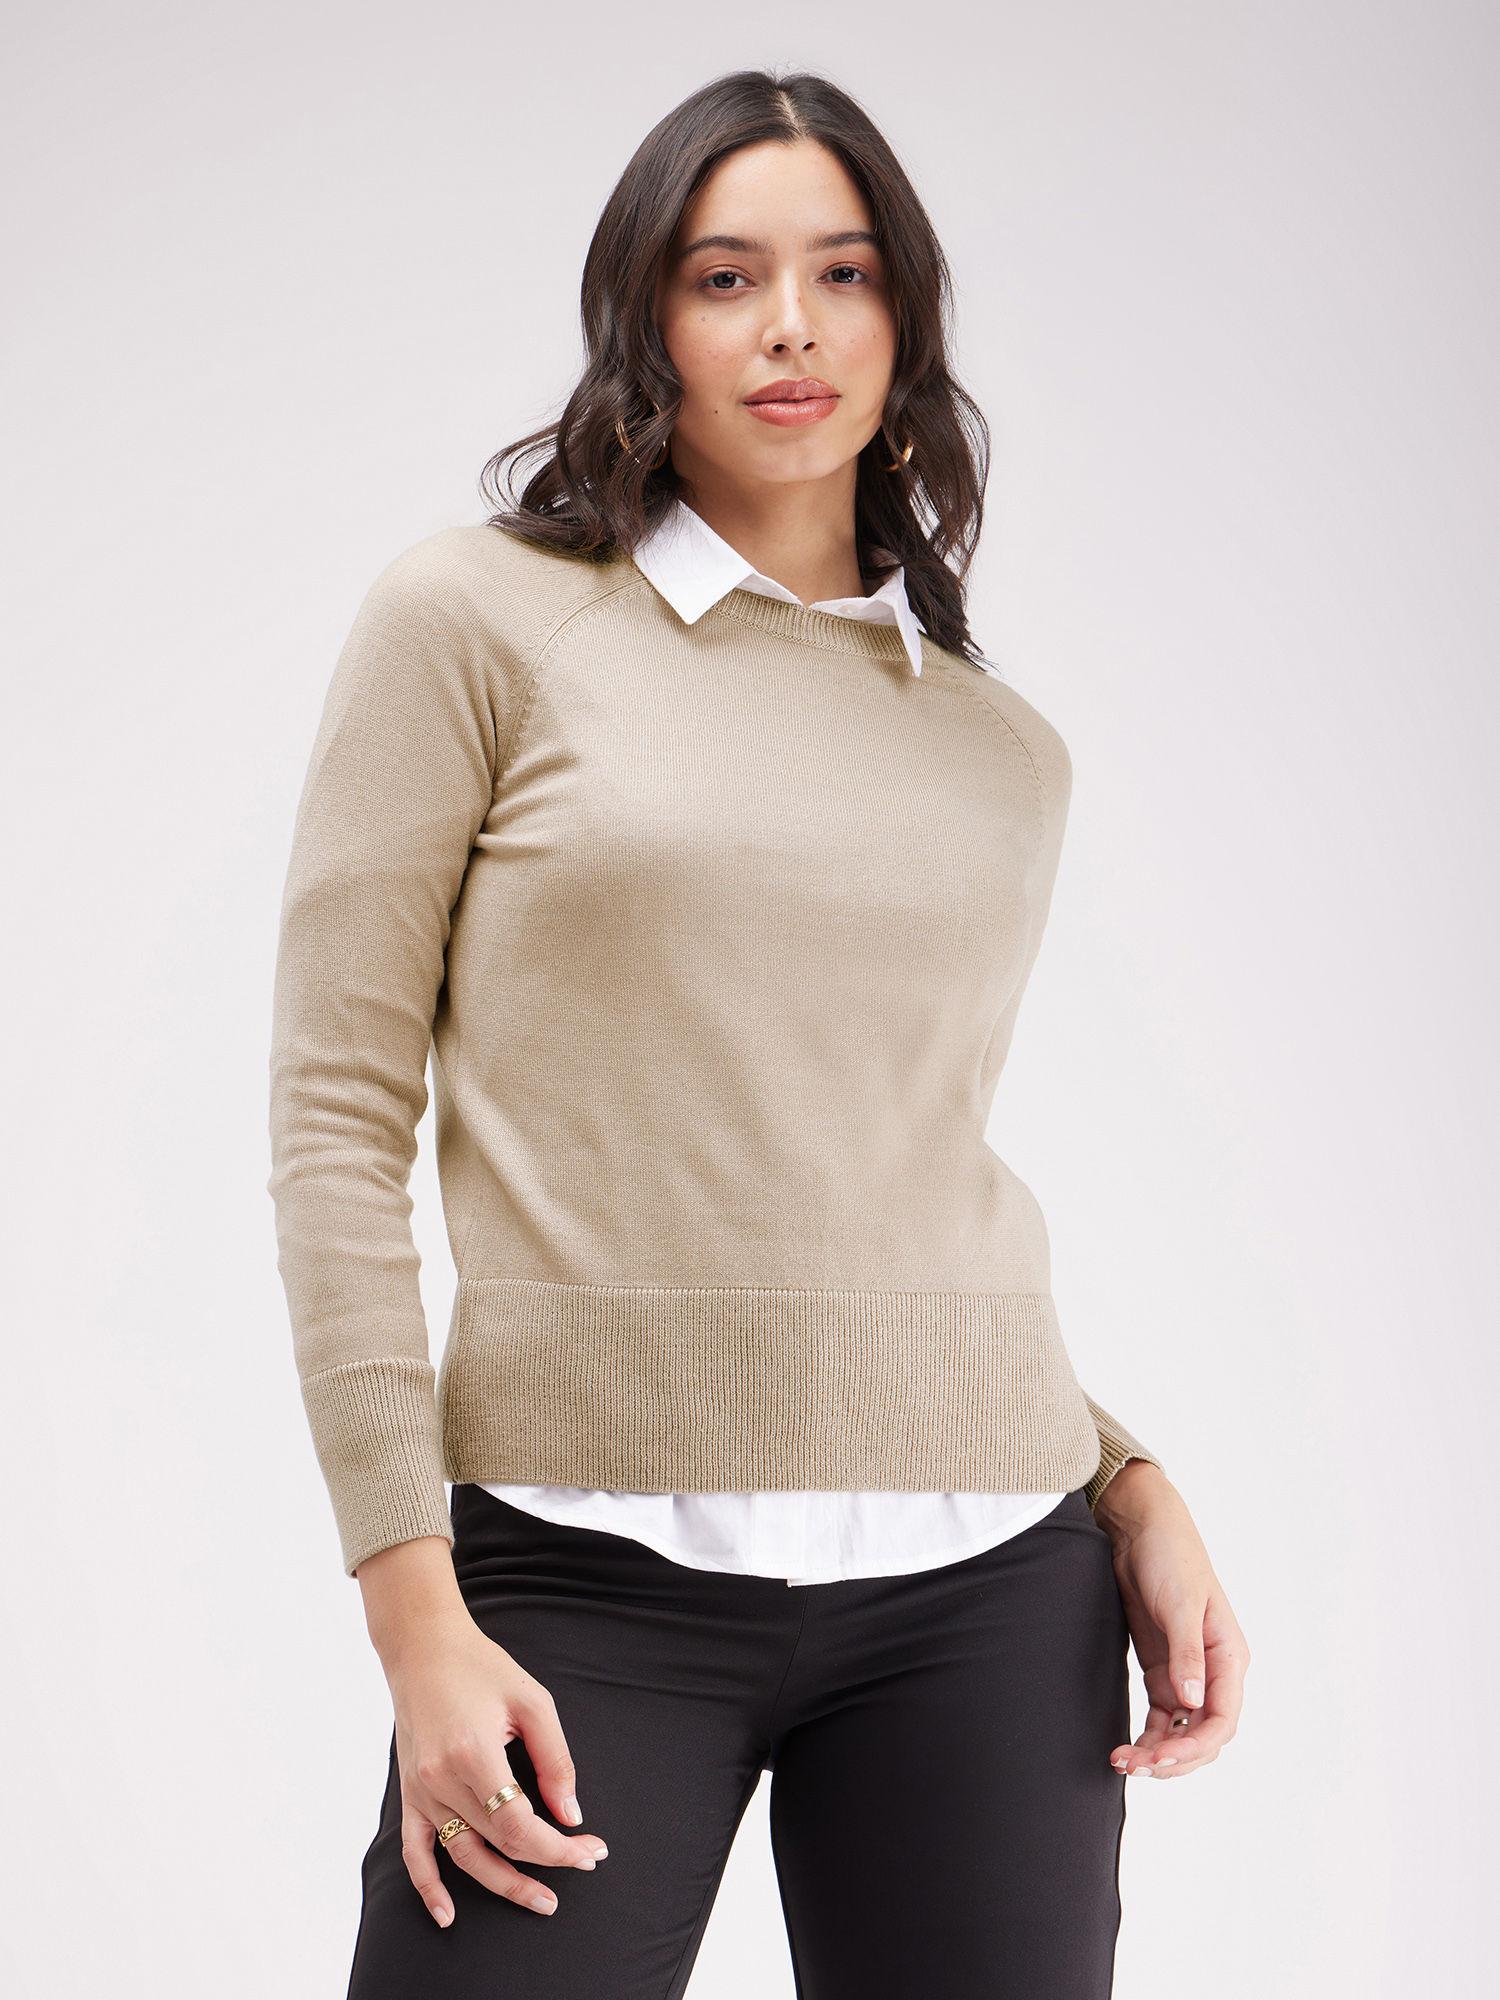 livsoft raglan sleeves round neck sweater - beige